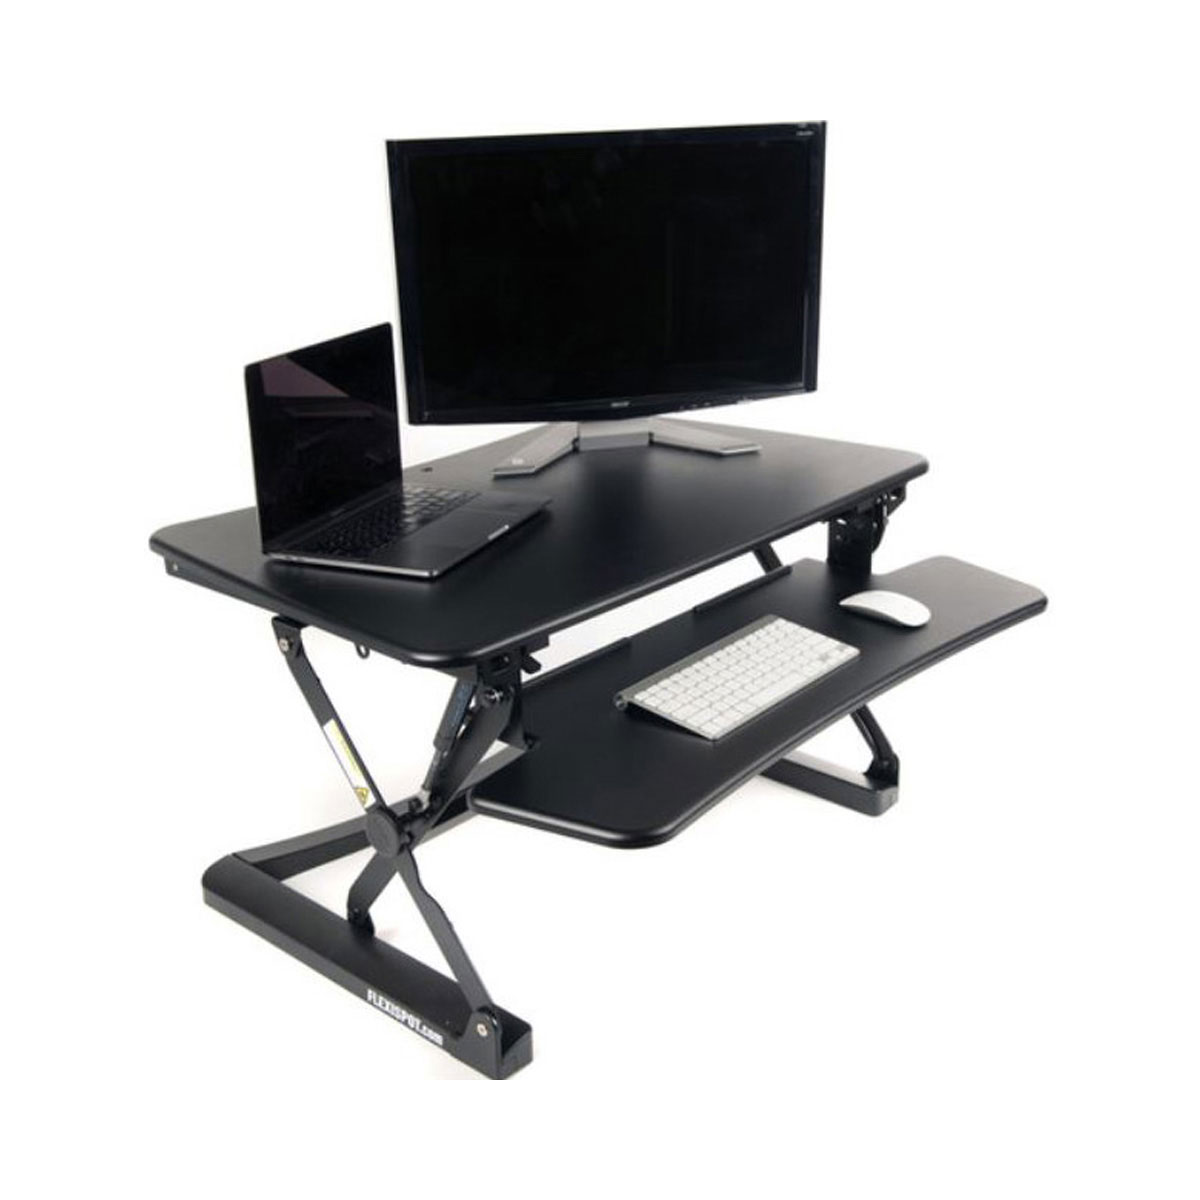 Loctek - Standing Desk Converter, 35", Black - Special Order Only - ETA 4-6 weeks Time